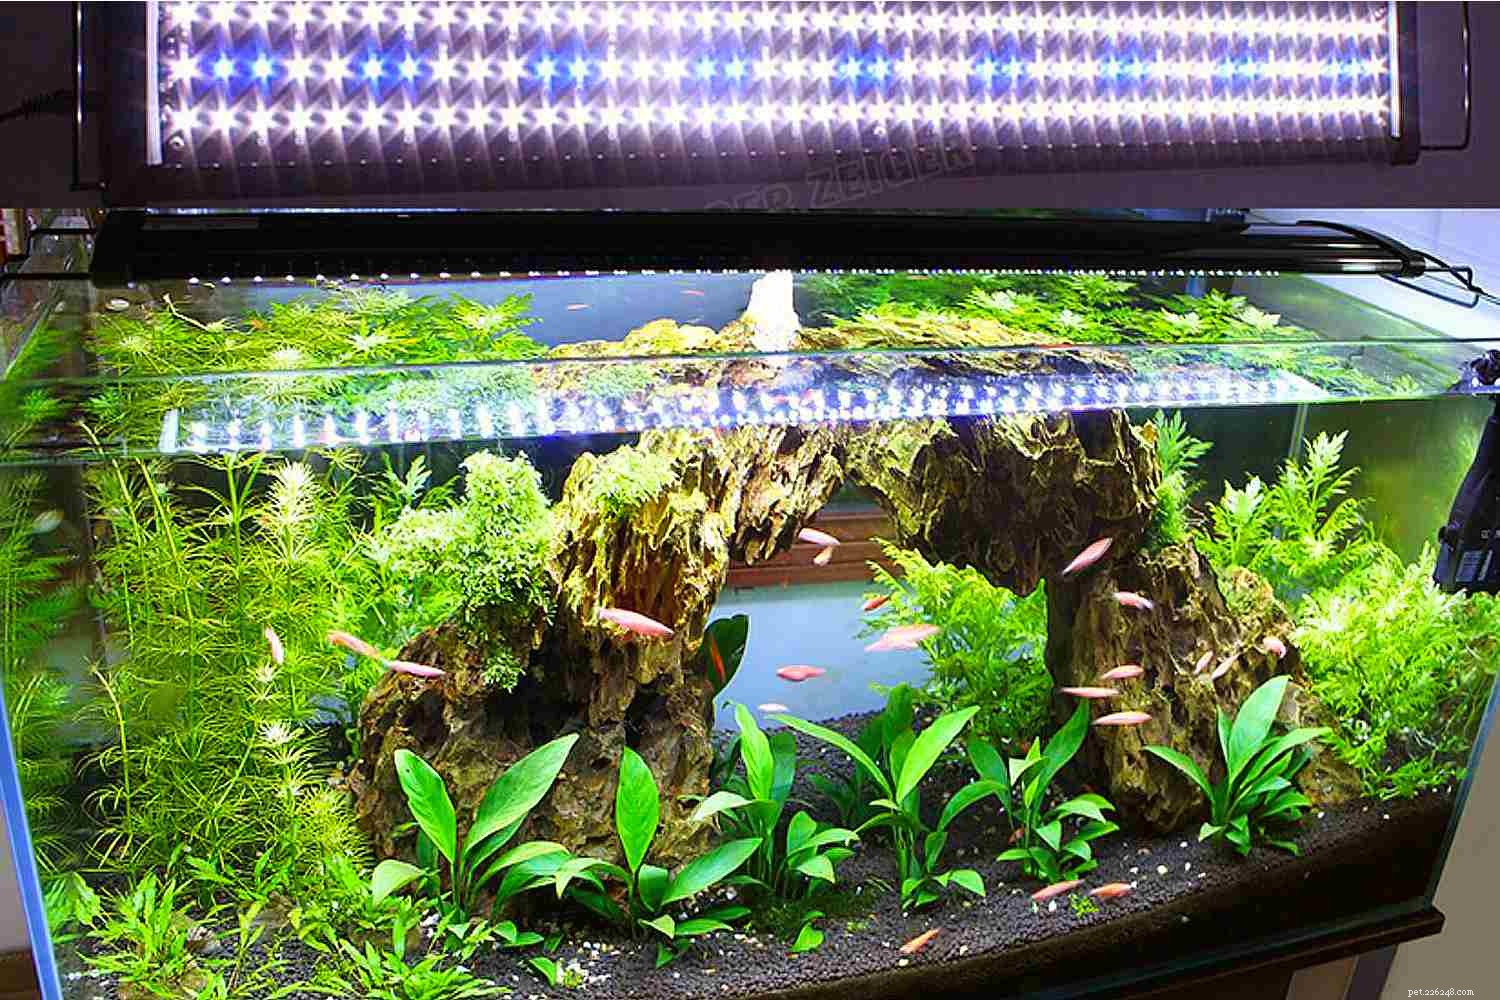 Requisitos de iluminação para plantas em aquários comunitários